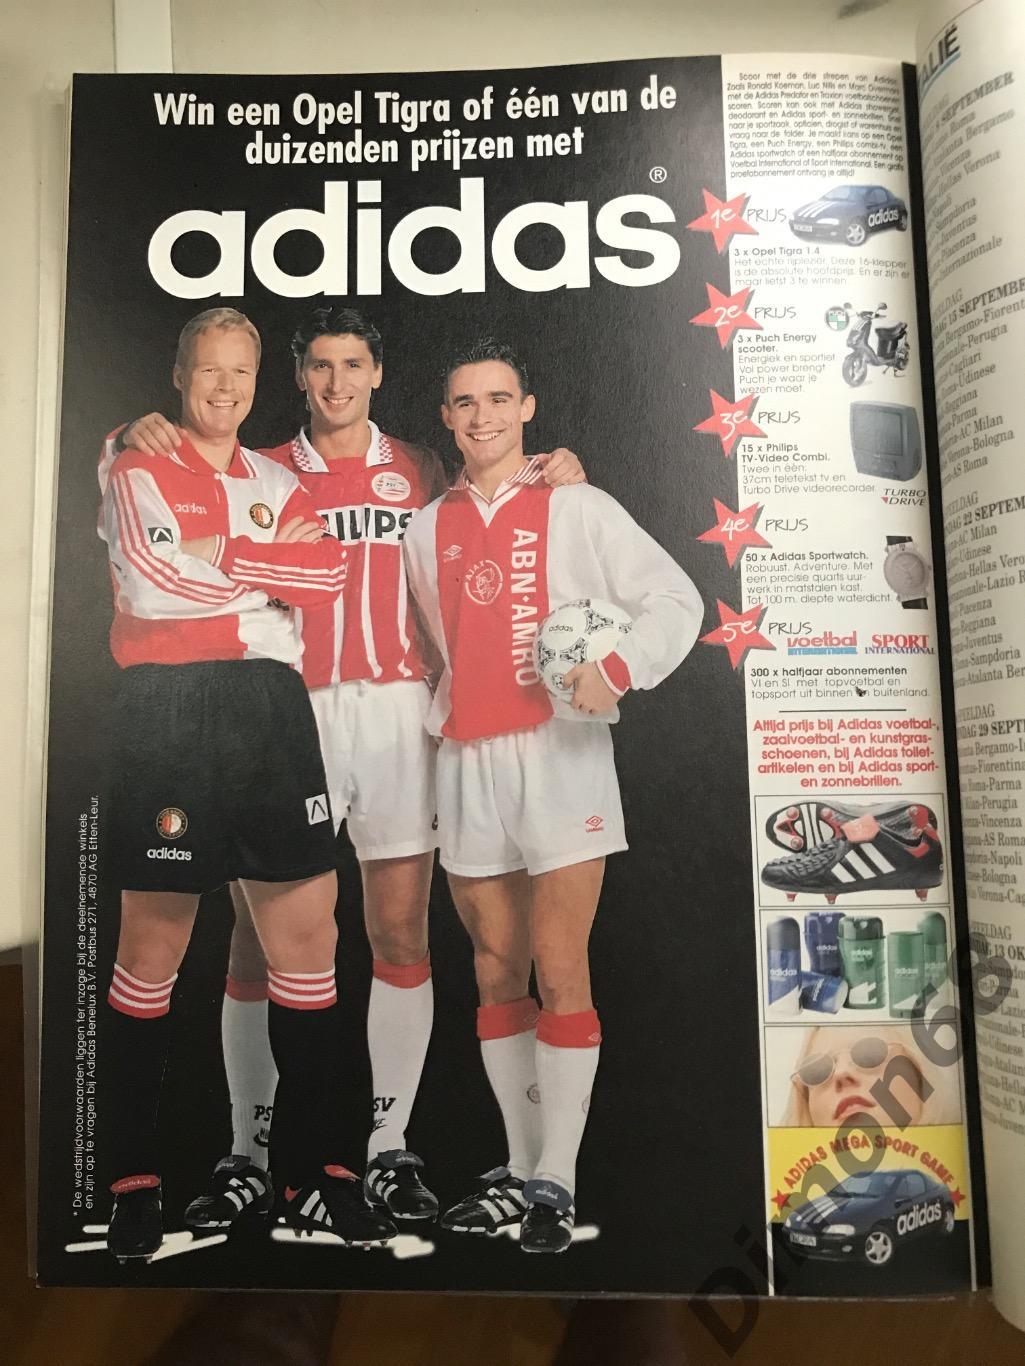 voetbal international special постеры чем голландии 96/97 5